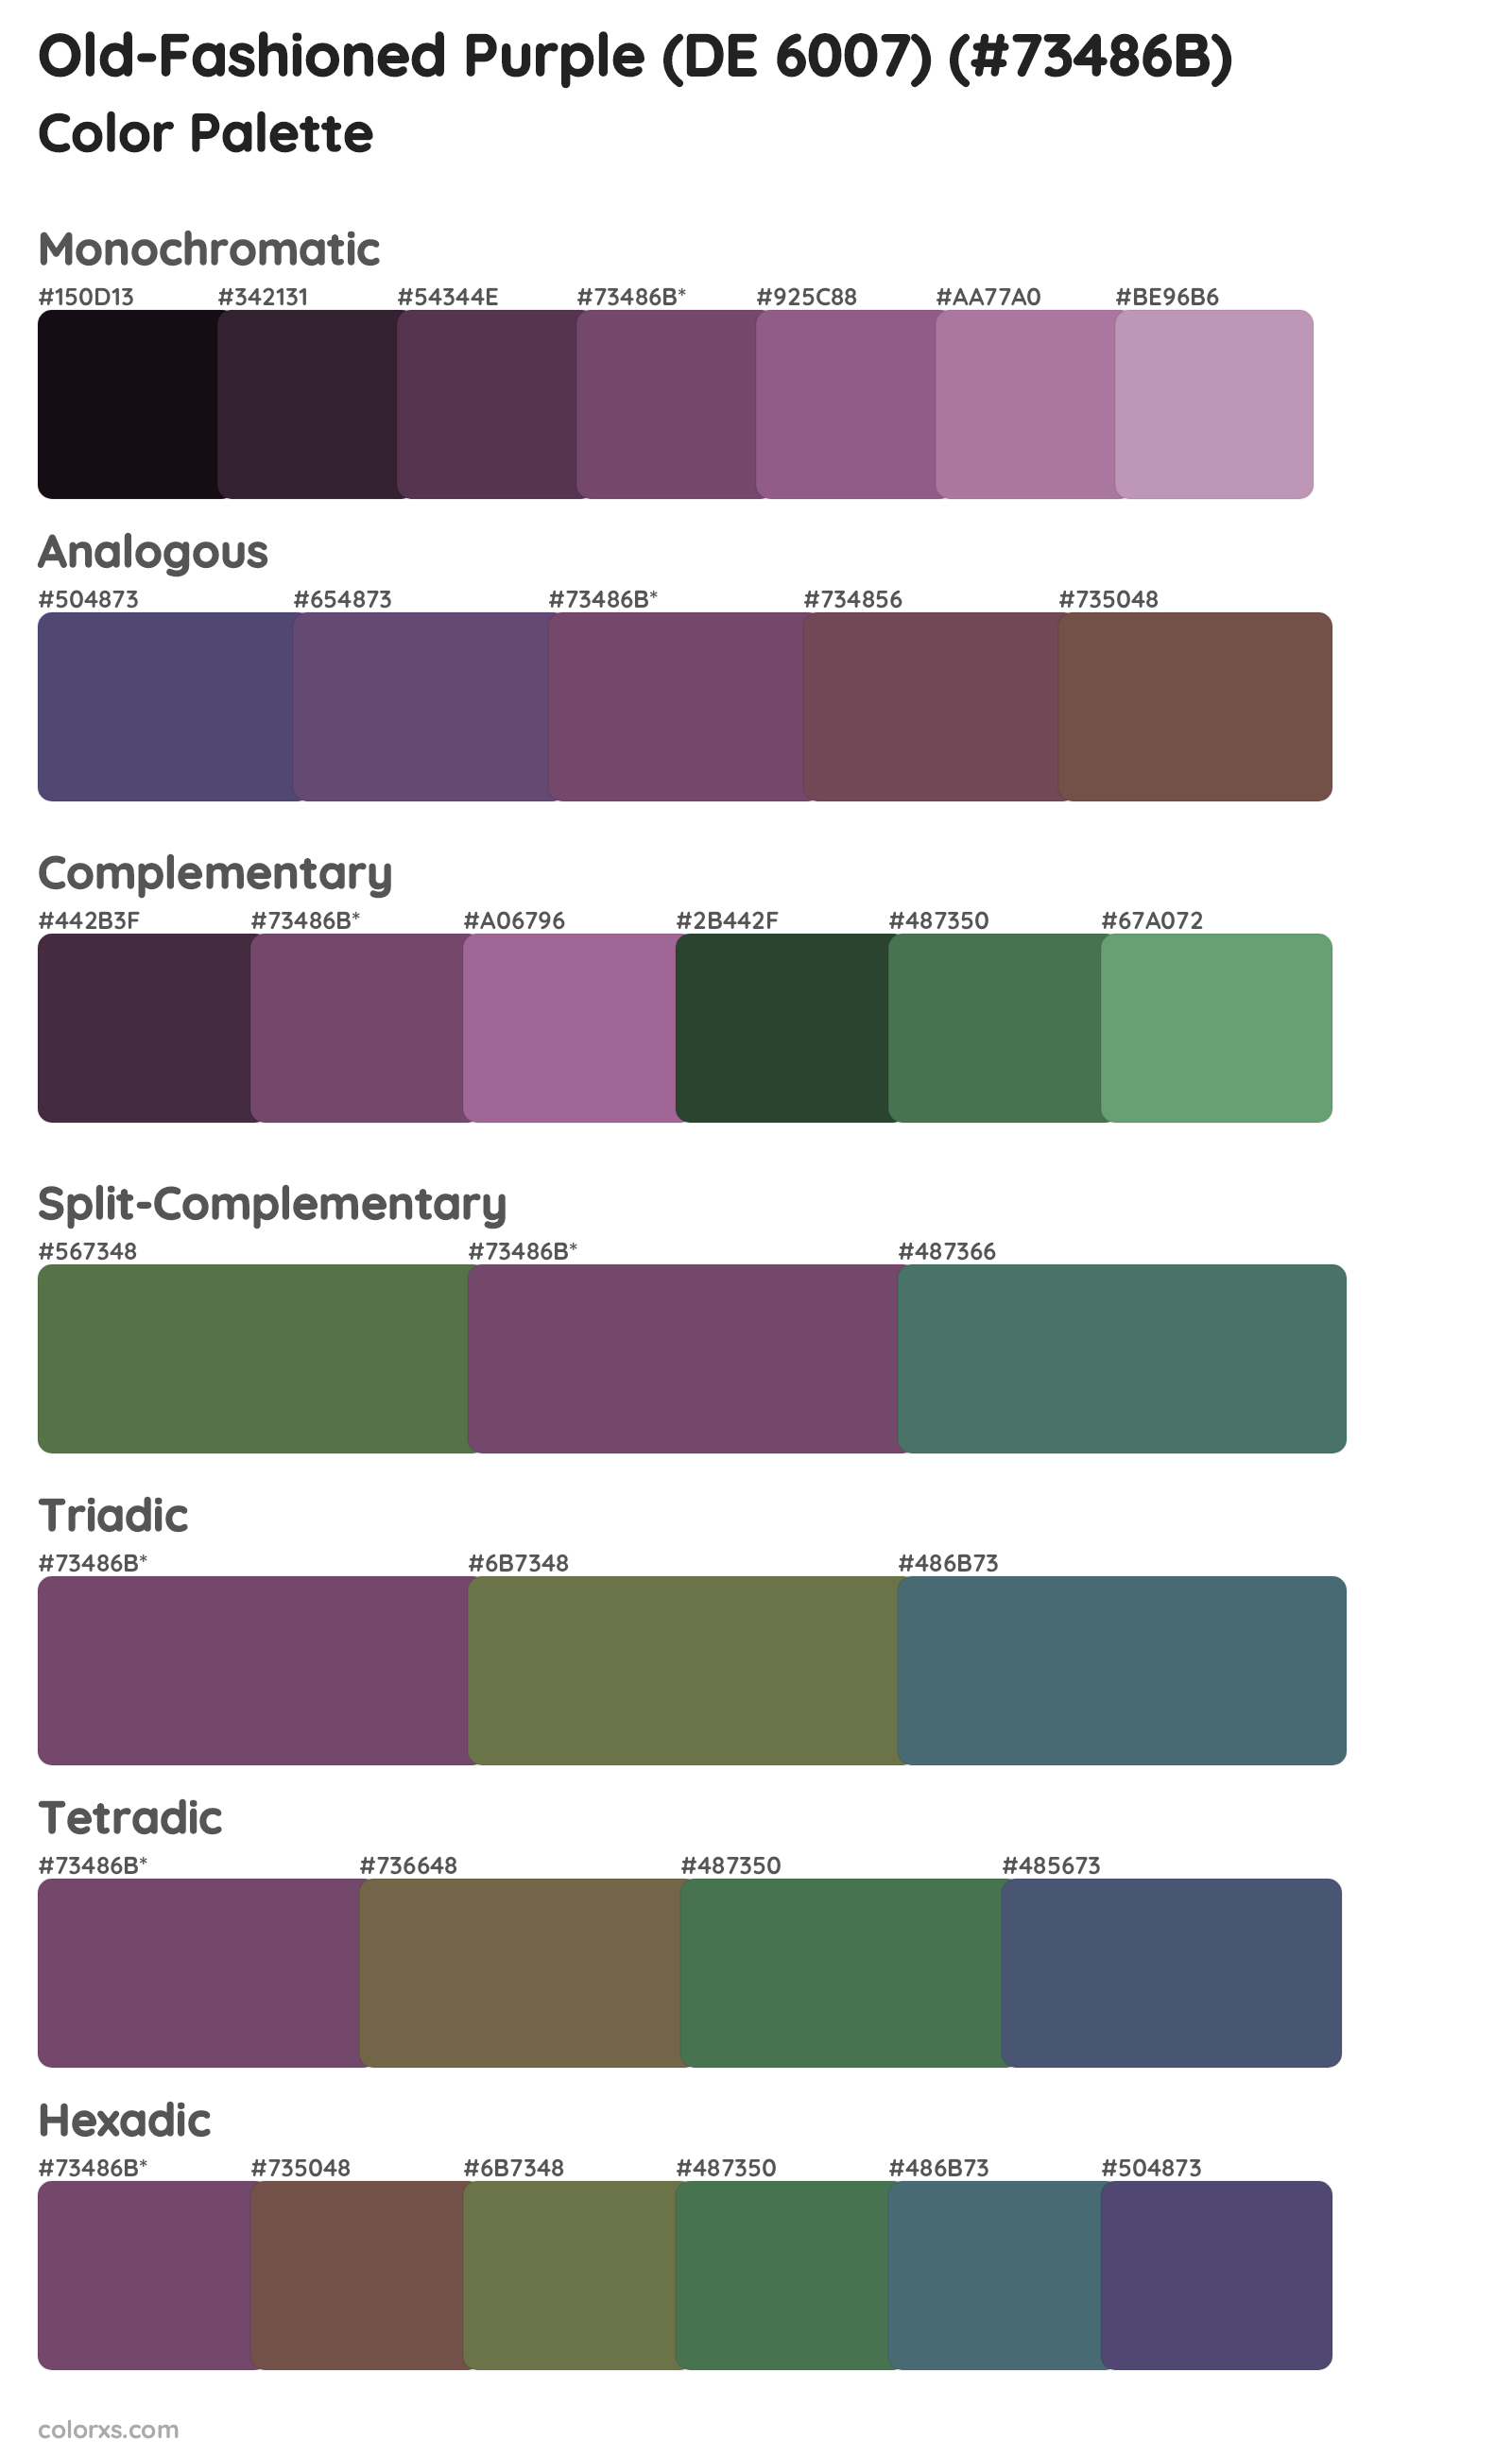 Old-Fashioned Purple (DE 6007) Color Scheme Palettes